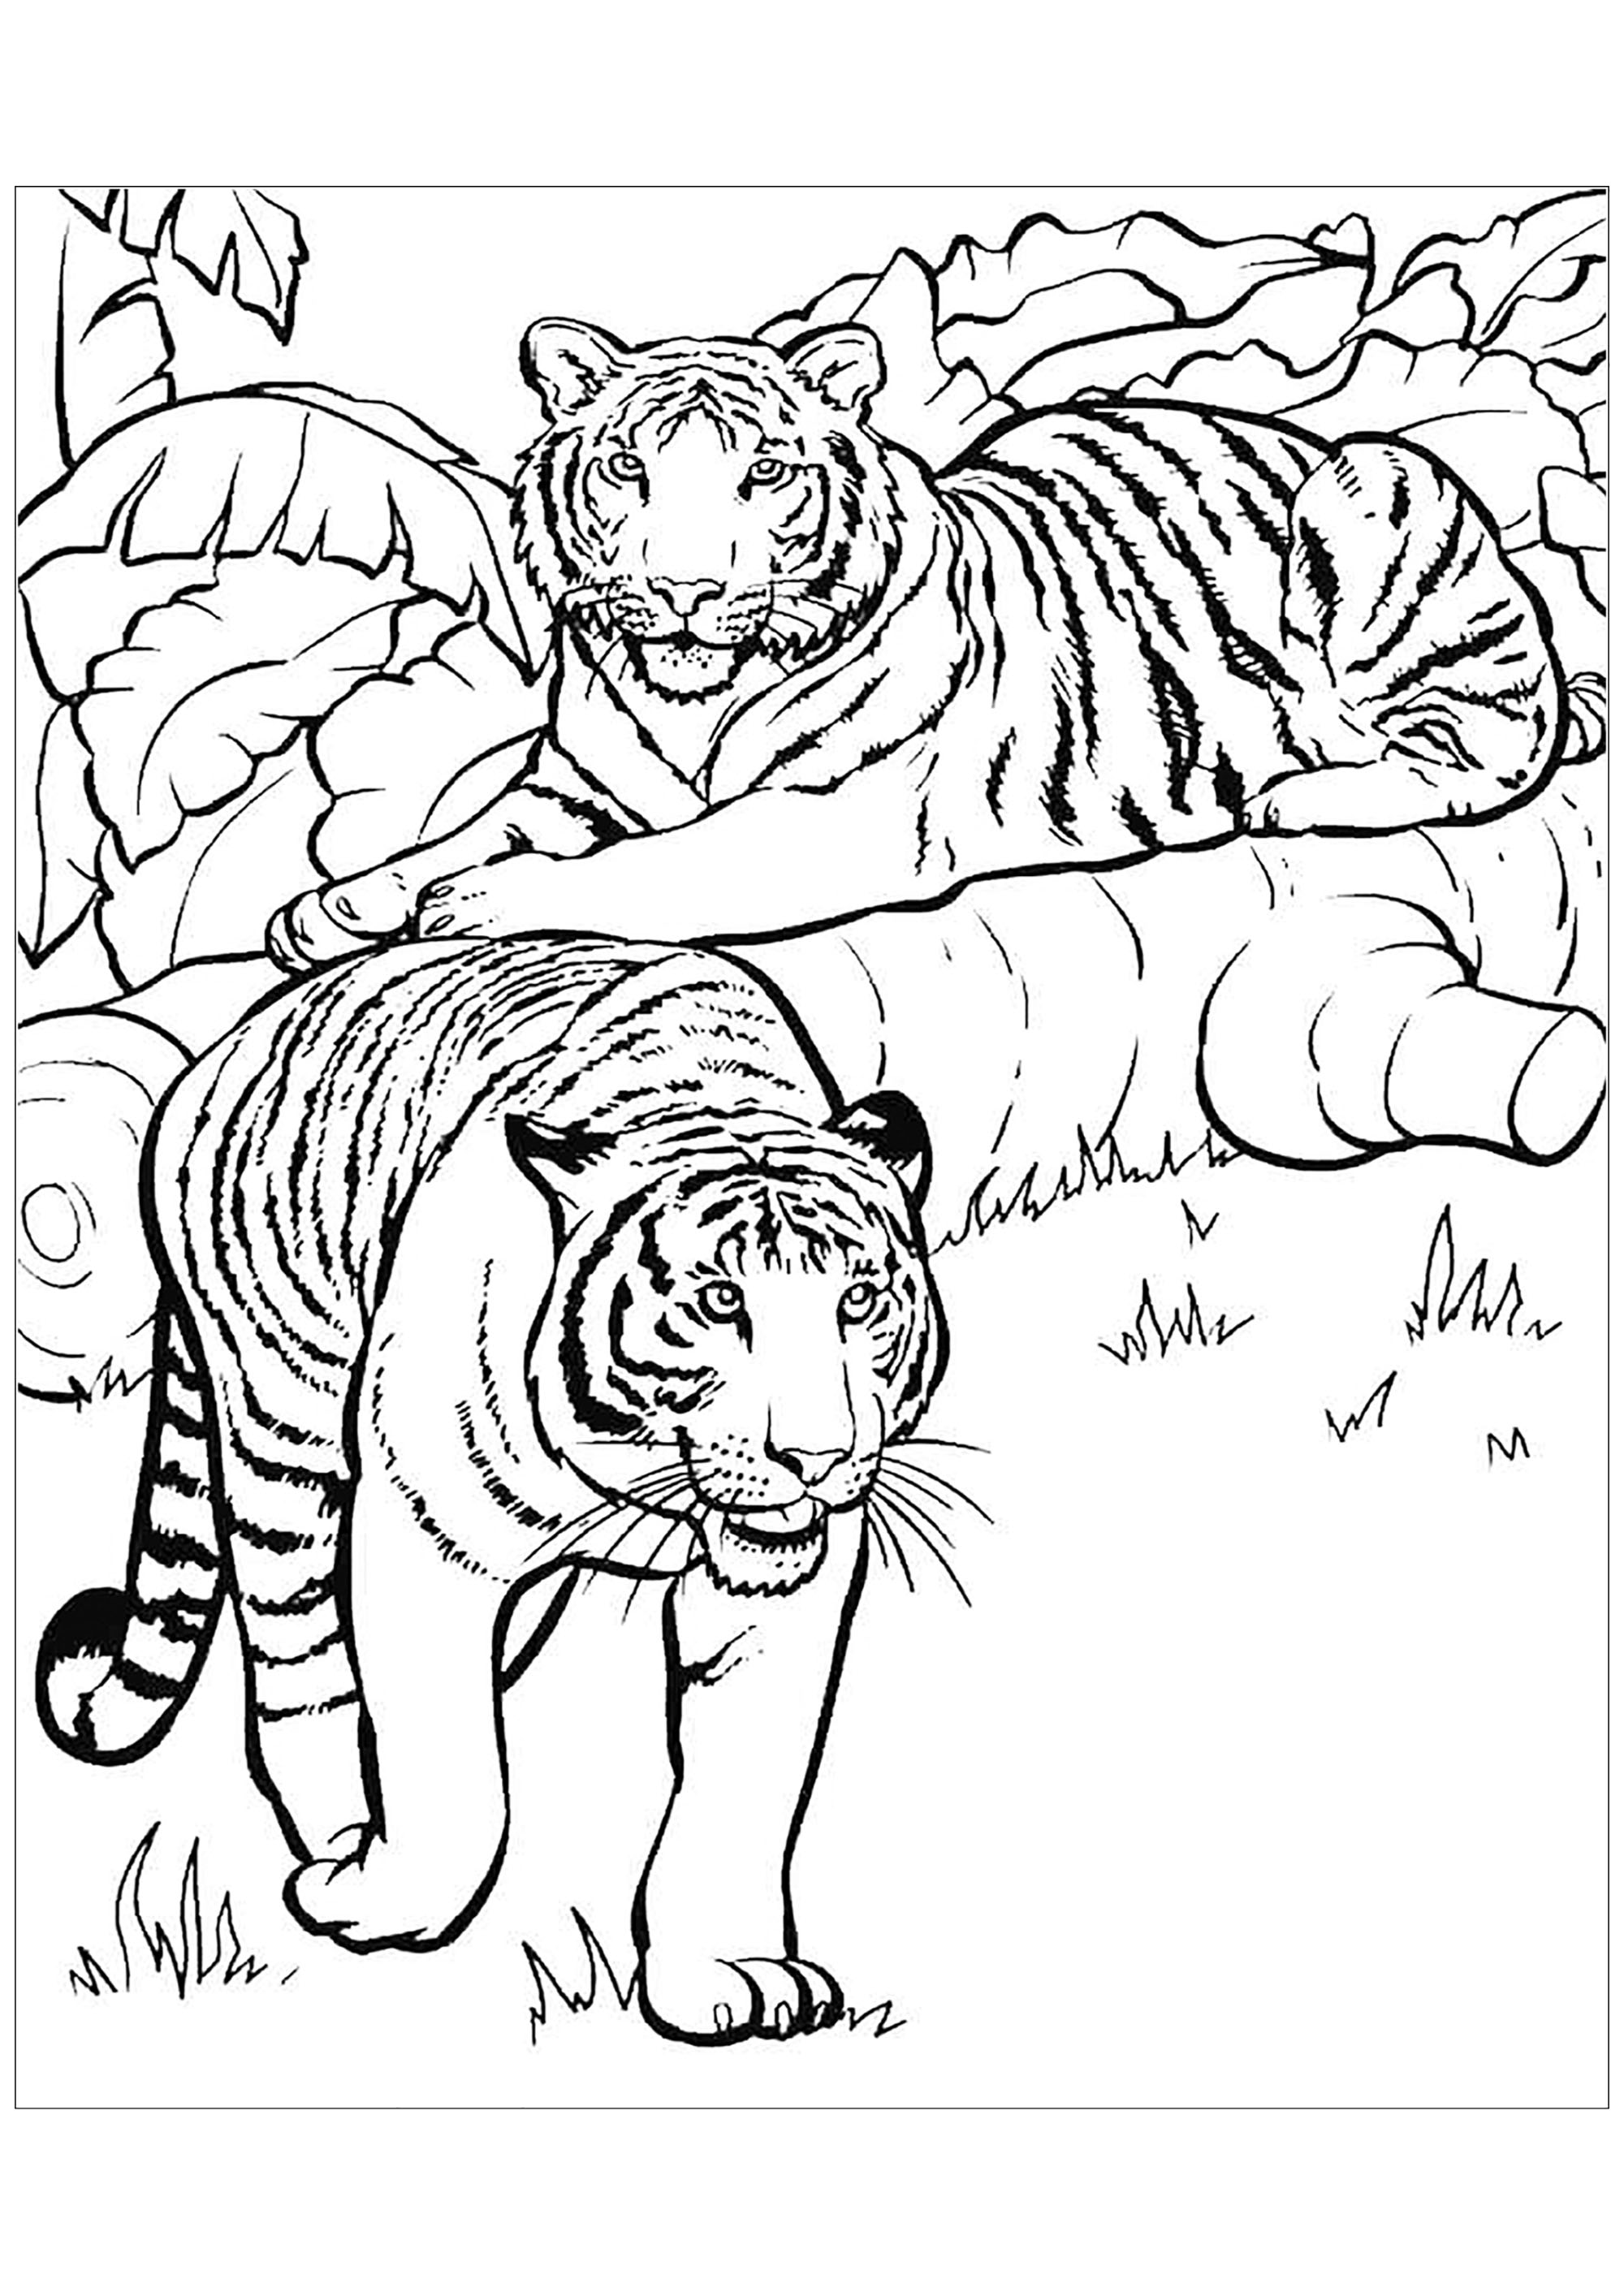 Descarga e imprime el dibujo de tigre para niños